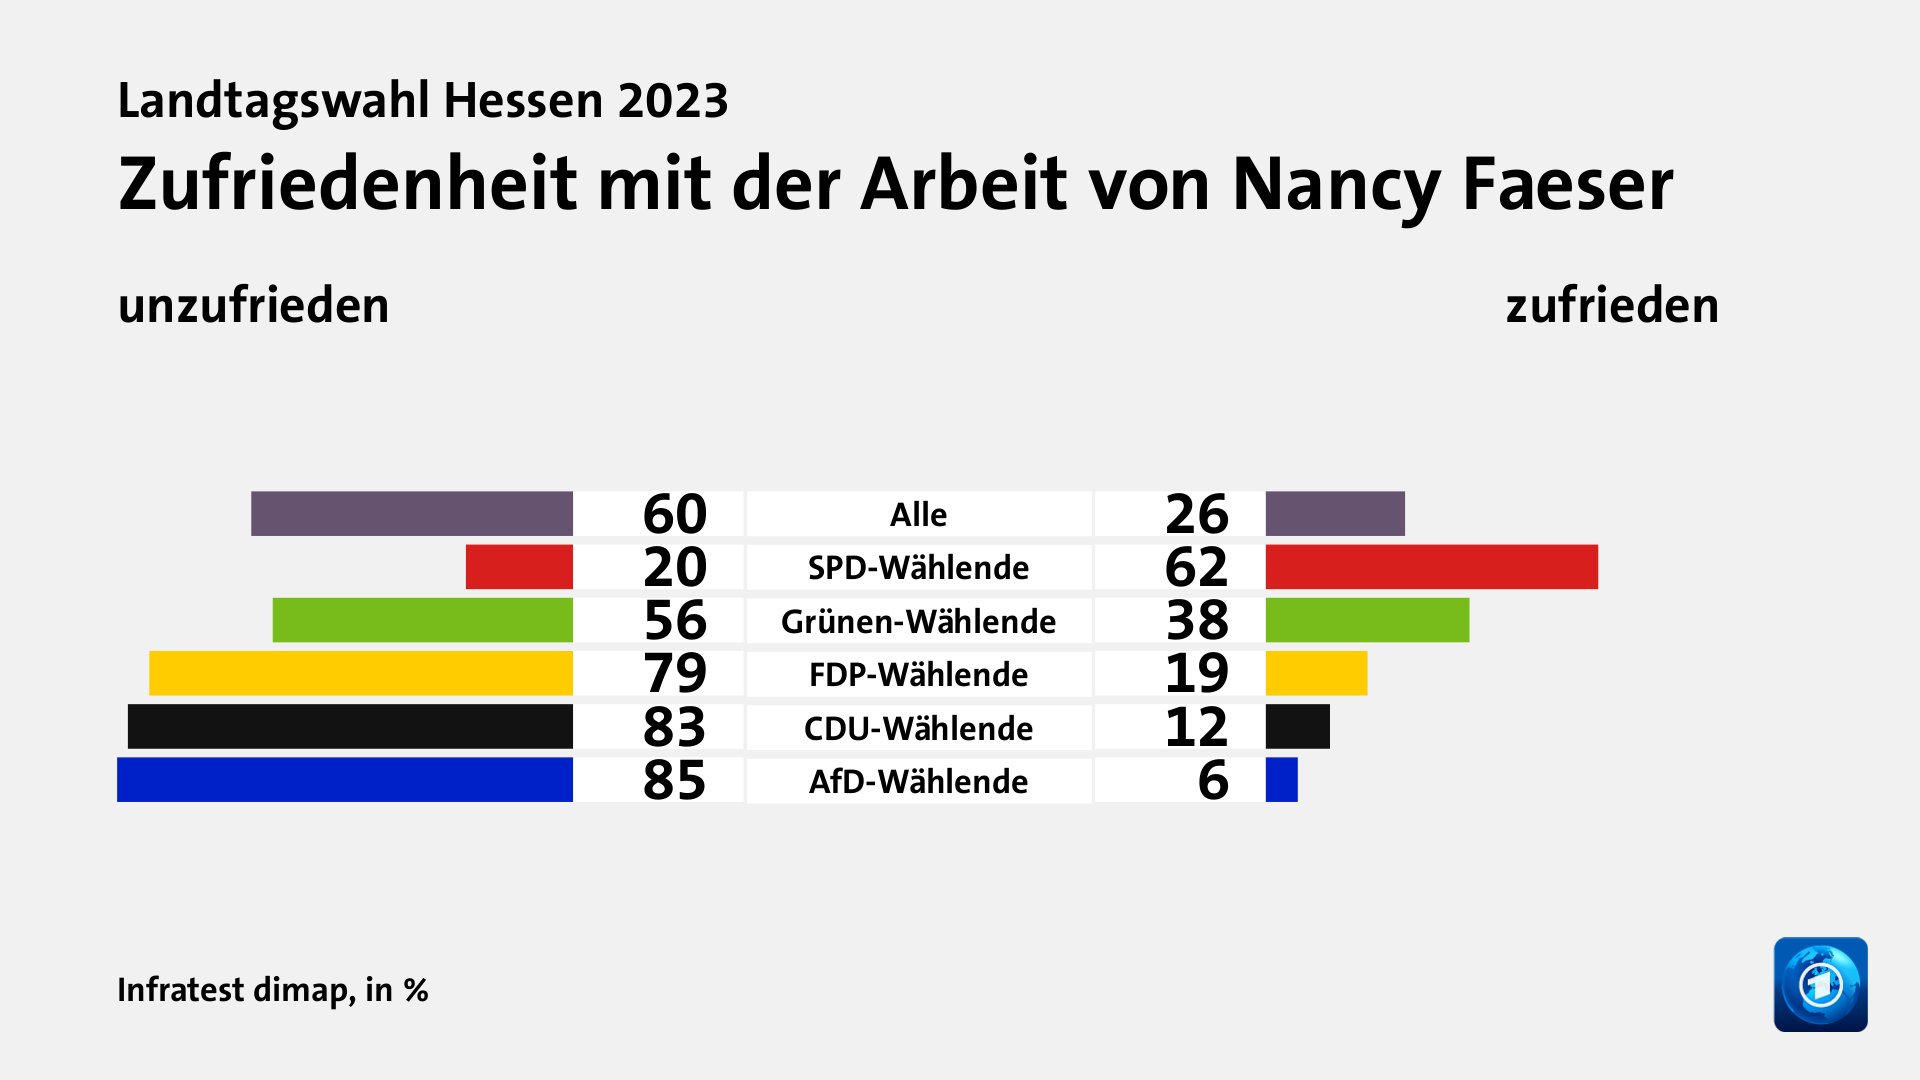 Zufriedenheit mit der Arbeit von Nancy Faeser (in %) Alle: unzufrieden 60, zufrieden 26; SPD-Wählende: unzufrieden 20, zufrieden 62; Grünen-Wählende: unzufrieden 56, zufrieden 38; FDP-Wählende: unzufrieden 79, zufrieden 19; CDU-Wählende: unzufrieden 83, zufrieden 12; AfD-Wählende: unzufrieden 85, zufrieden 6; Quelle: Infratest dimap